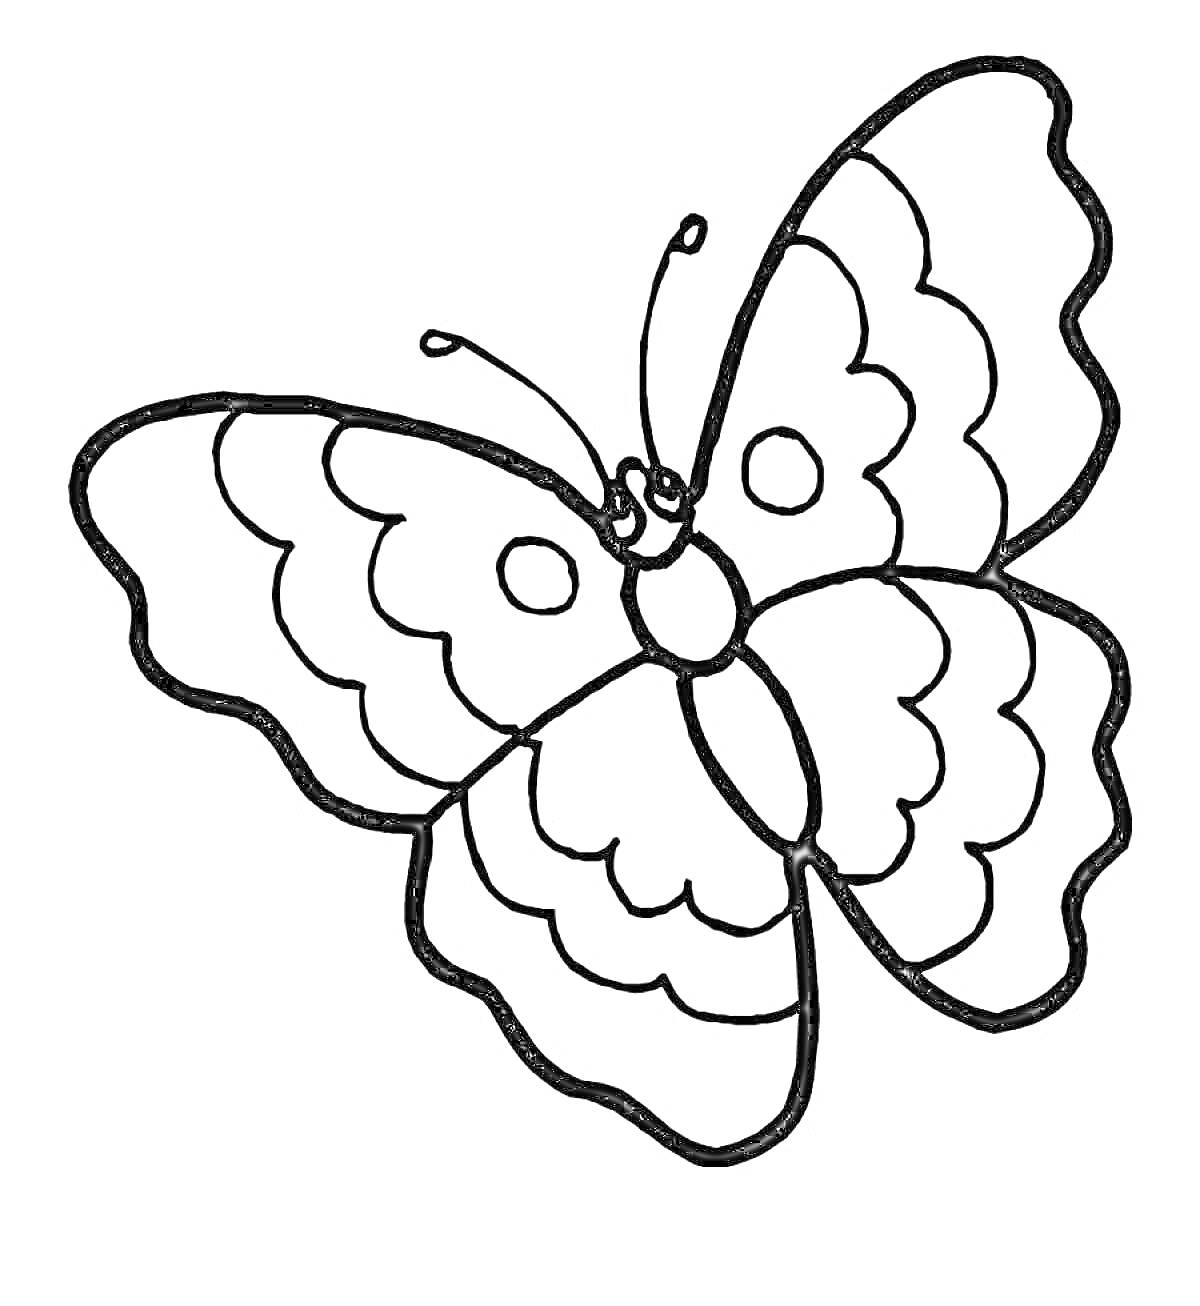 Раскраска Бабочка с узорчатыми крыльями и антеннами